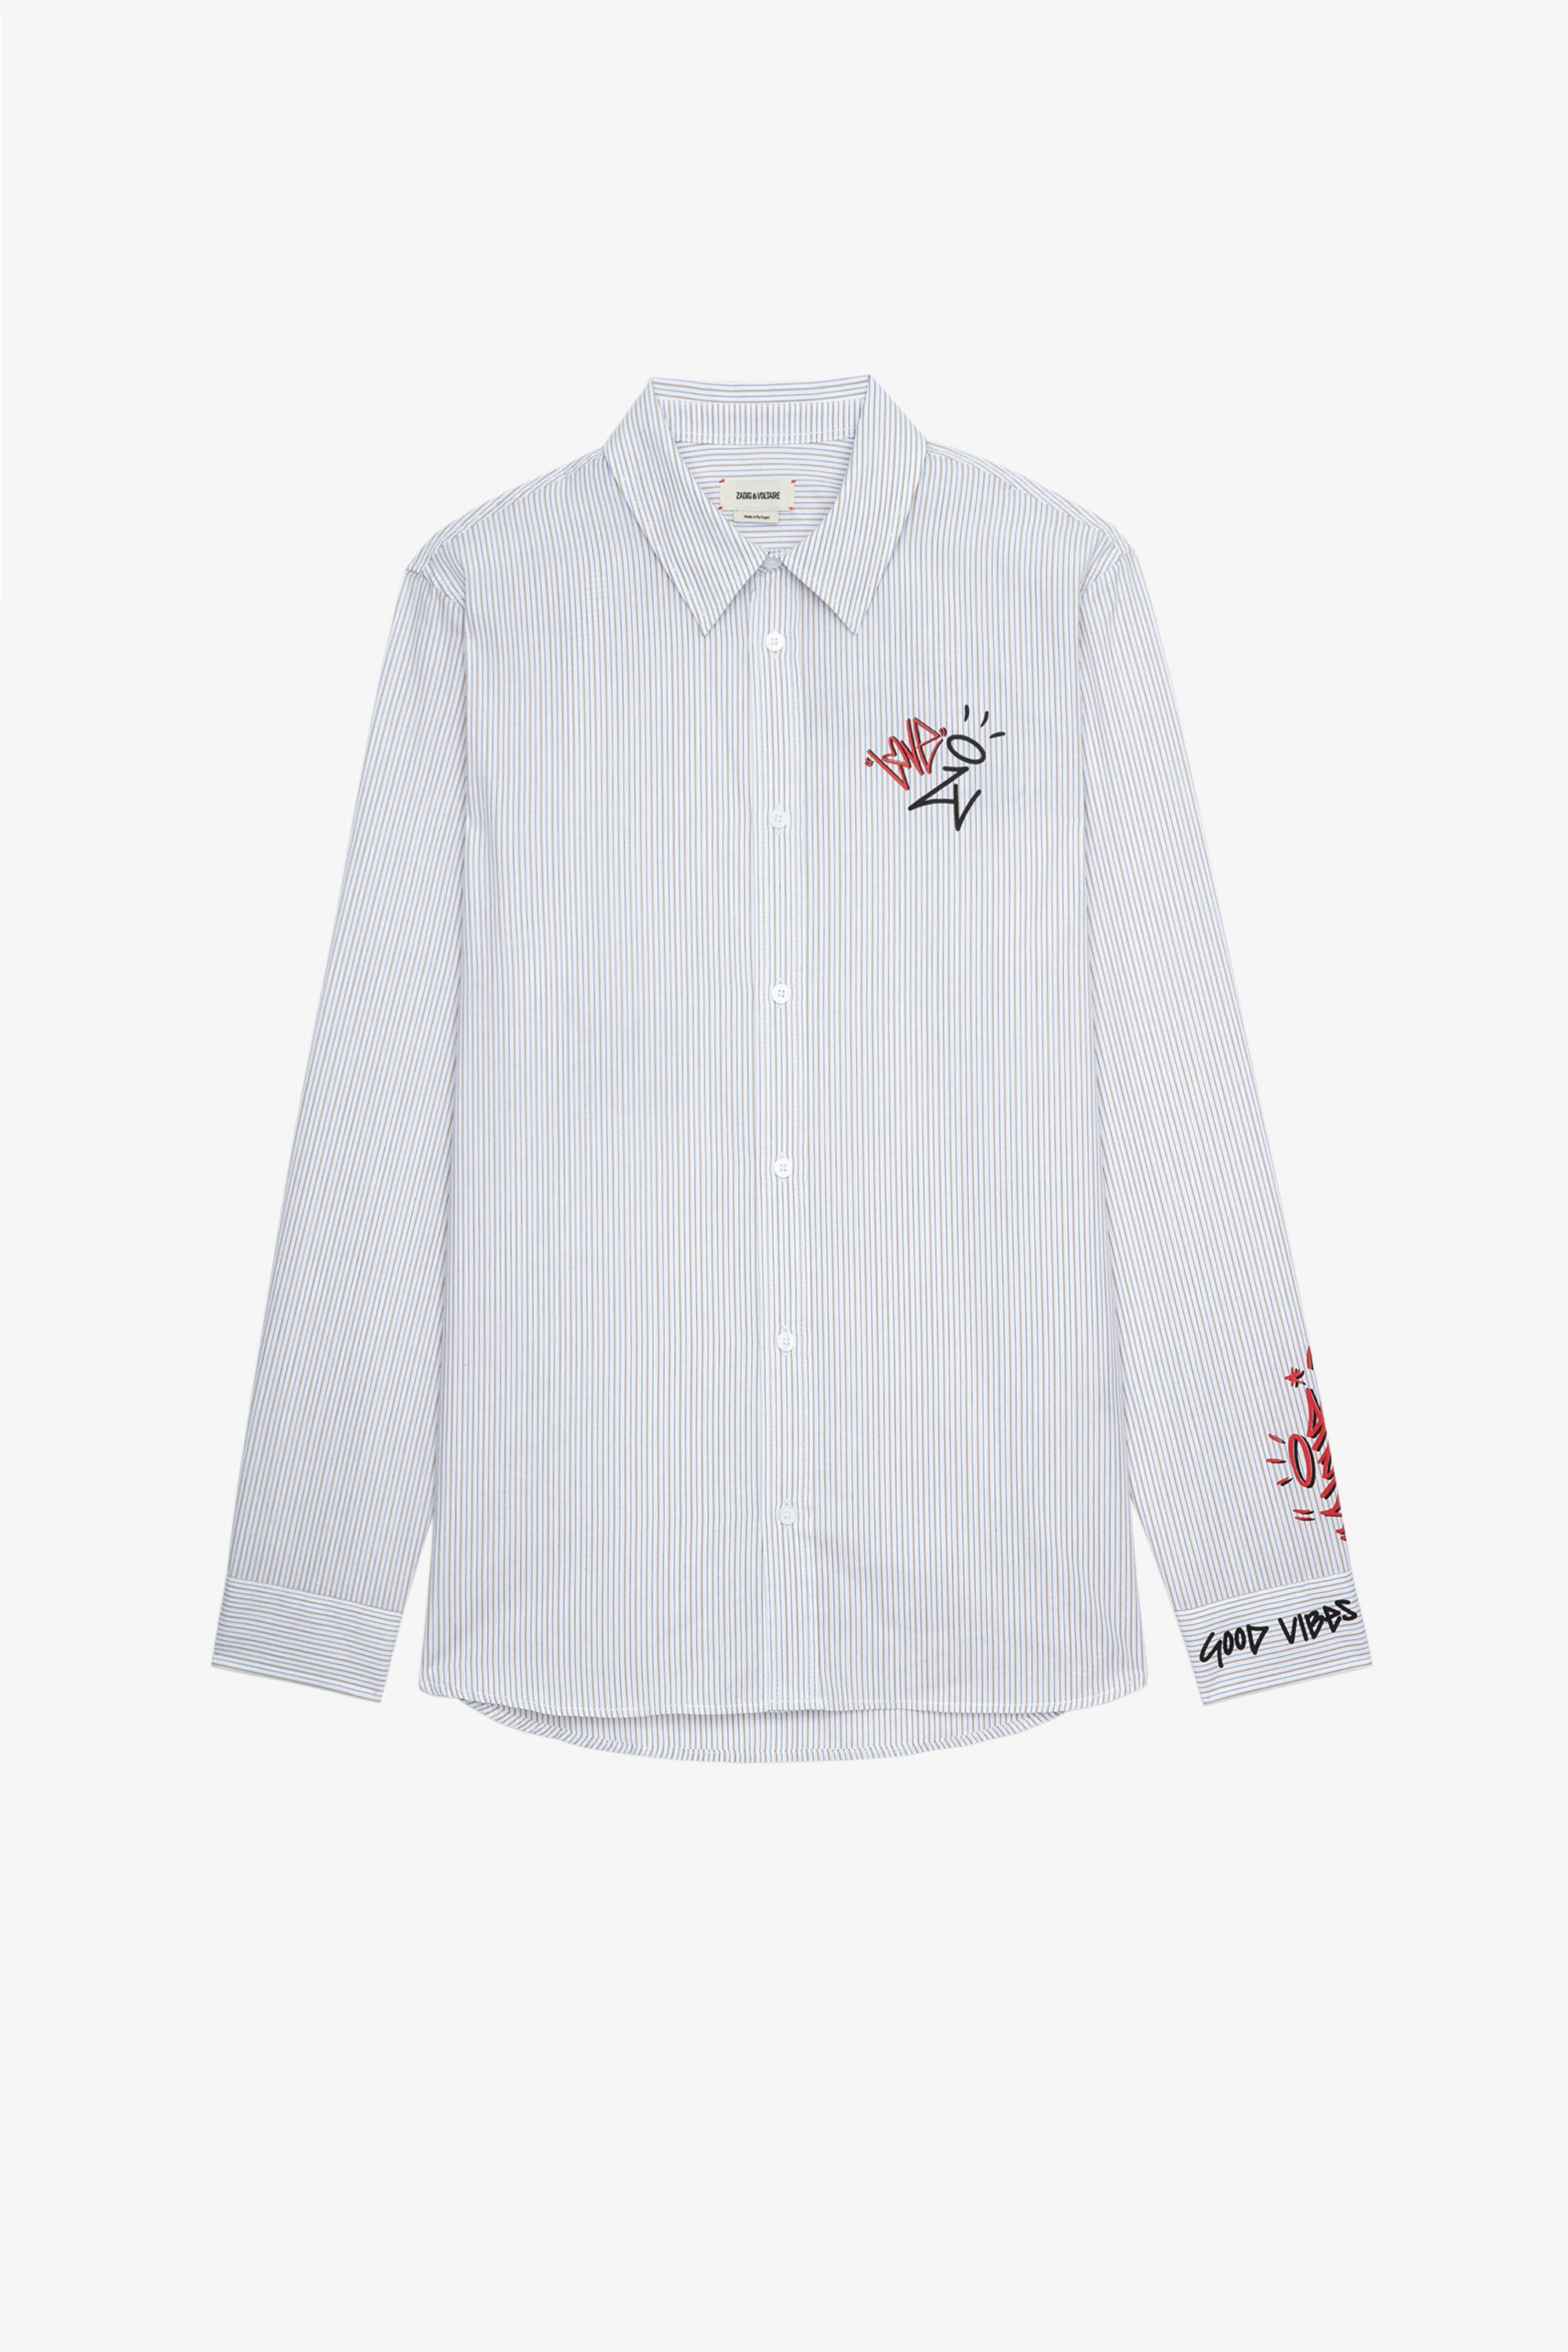 Jormi Stan Stripe シャツ Men’s Jormi light grey cotton shirt with stripes and motifs